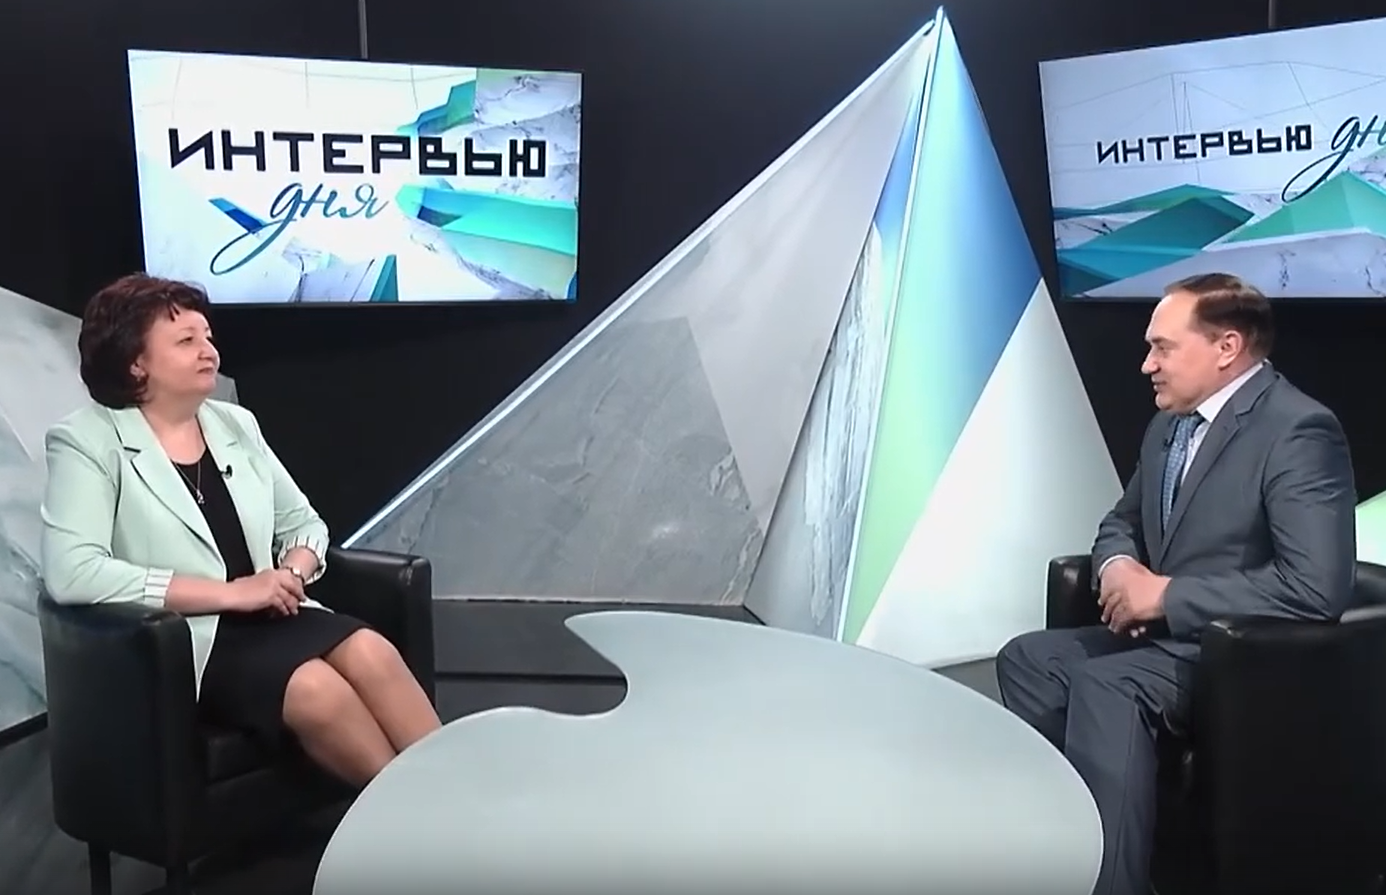 Юлия Лысенко рассказала о «Летописи тюркской цивилизации» в интервью телеканалу «Катунь24»